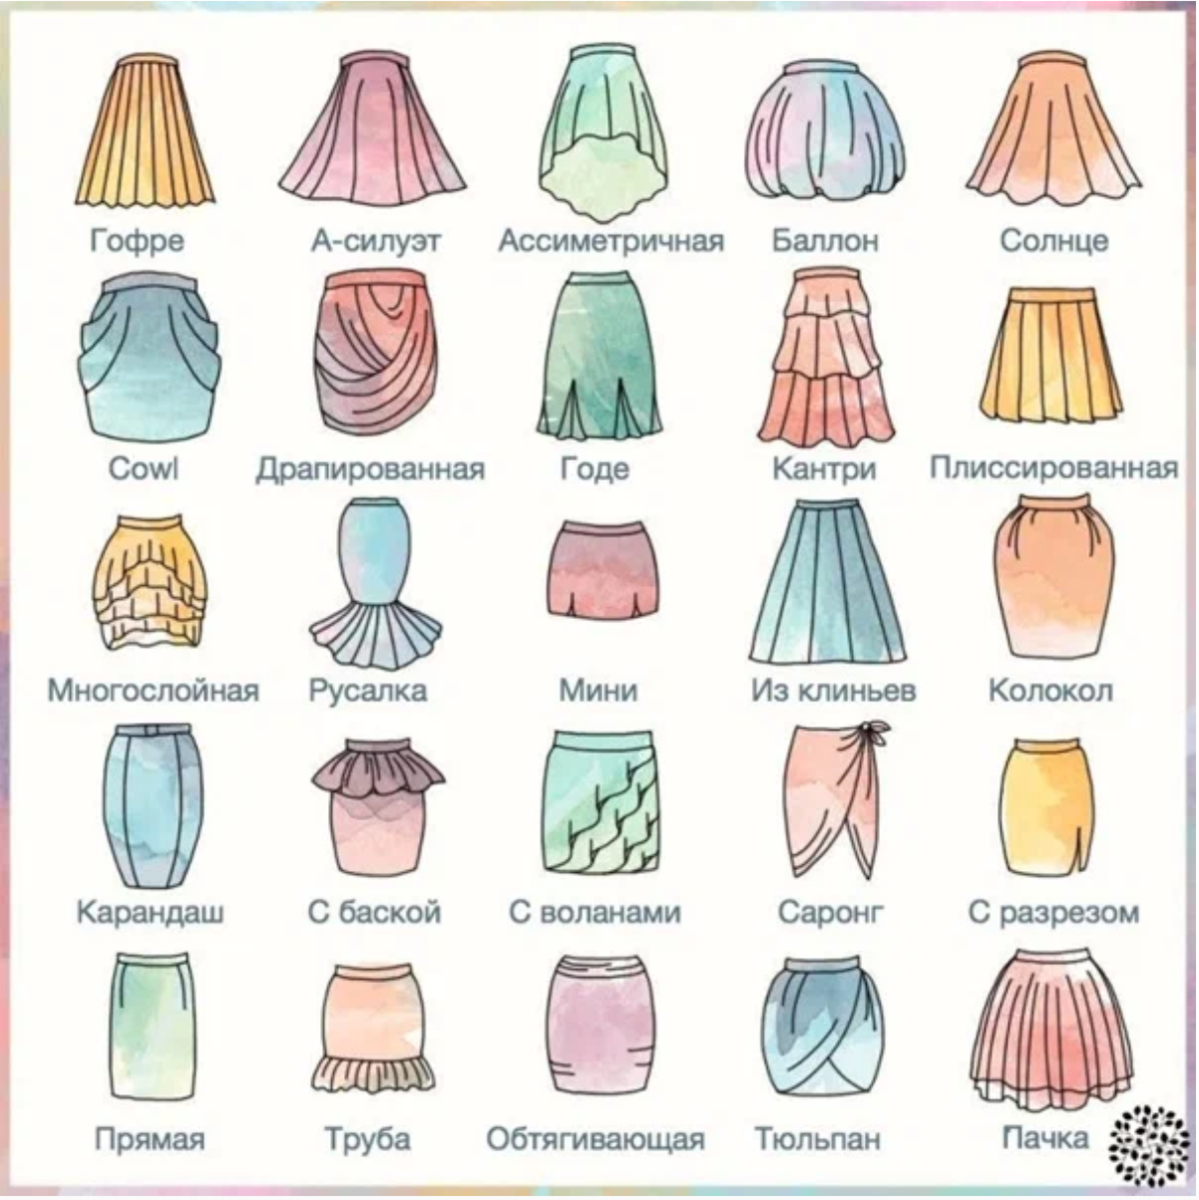 Формы женских юбок. Разные виды юбок. Виды юбок и их названия. Фасоны юбок и названия. Модели юбок названия.